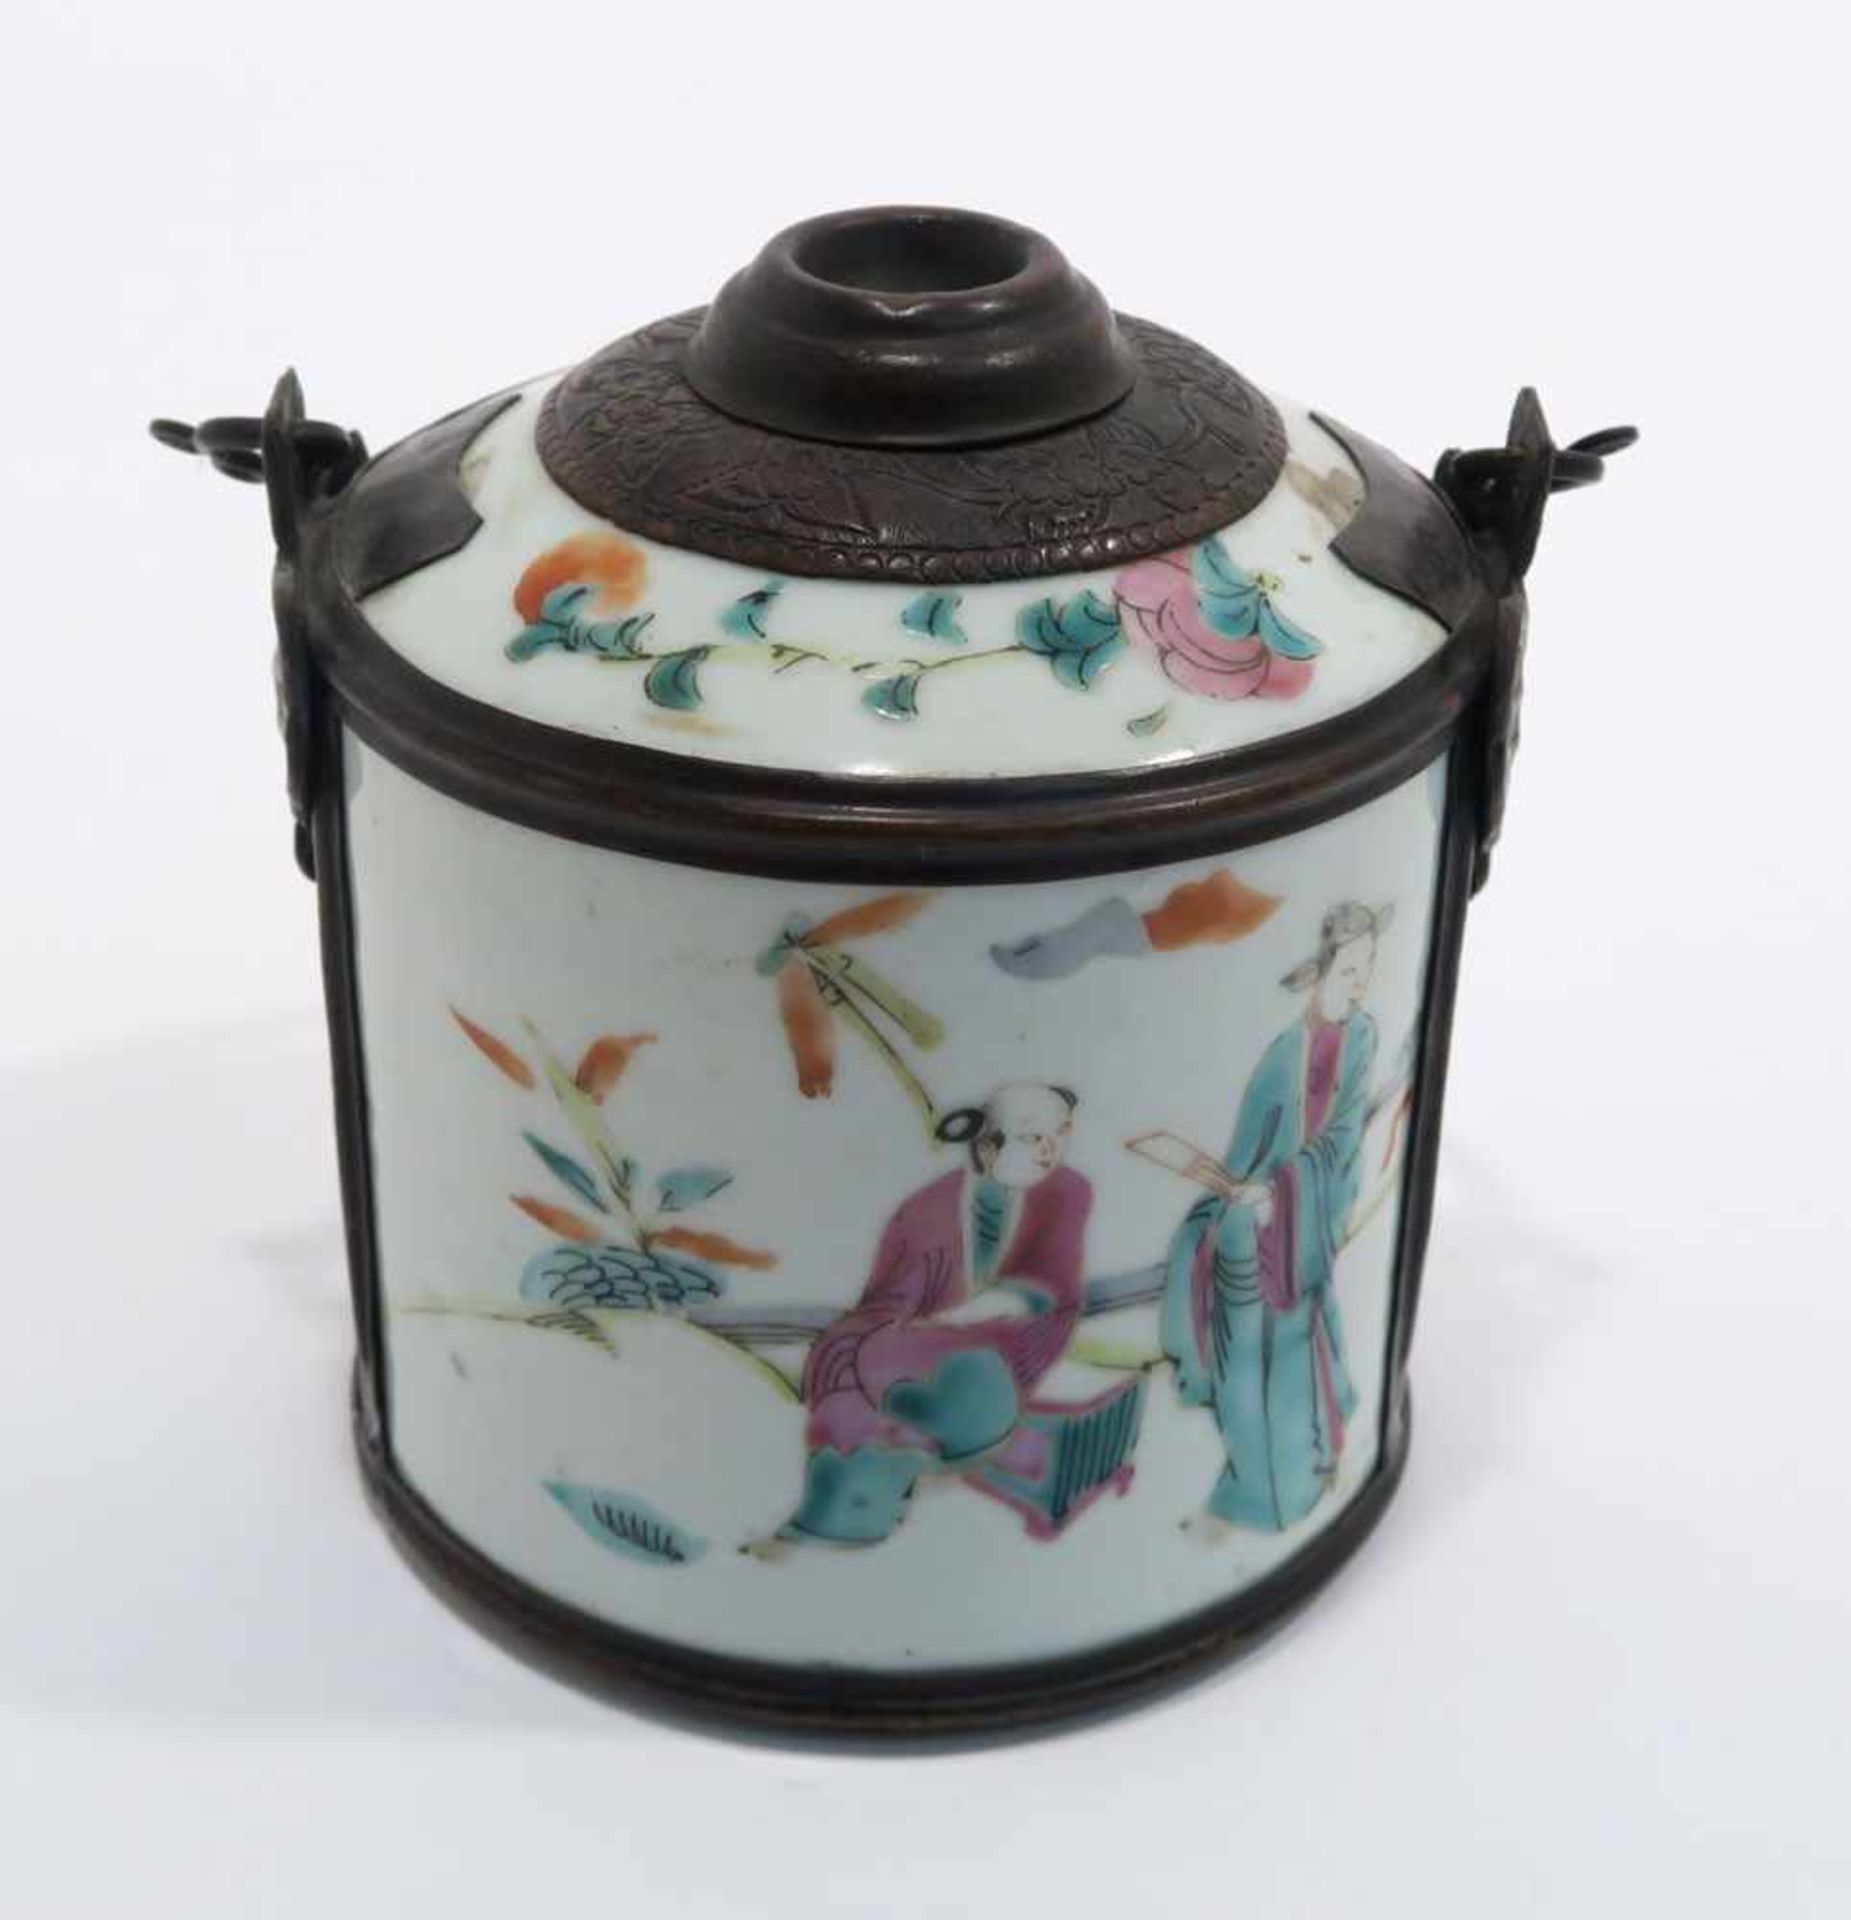 Opiumpfeife / Vase / DeckelgefäßChina. Porzellan, tlw. mit Kupfermontierung. Verschiedene bunte bzw. - Bild 4 aus 21